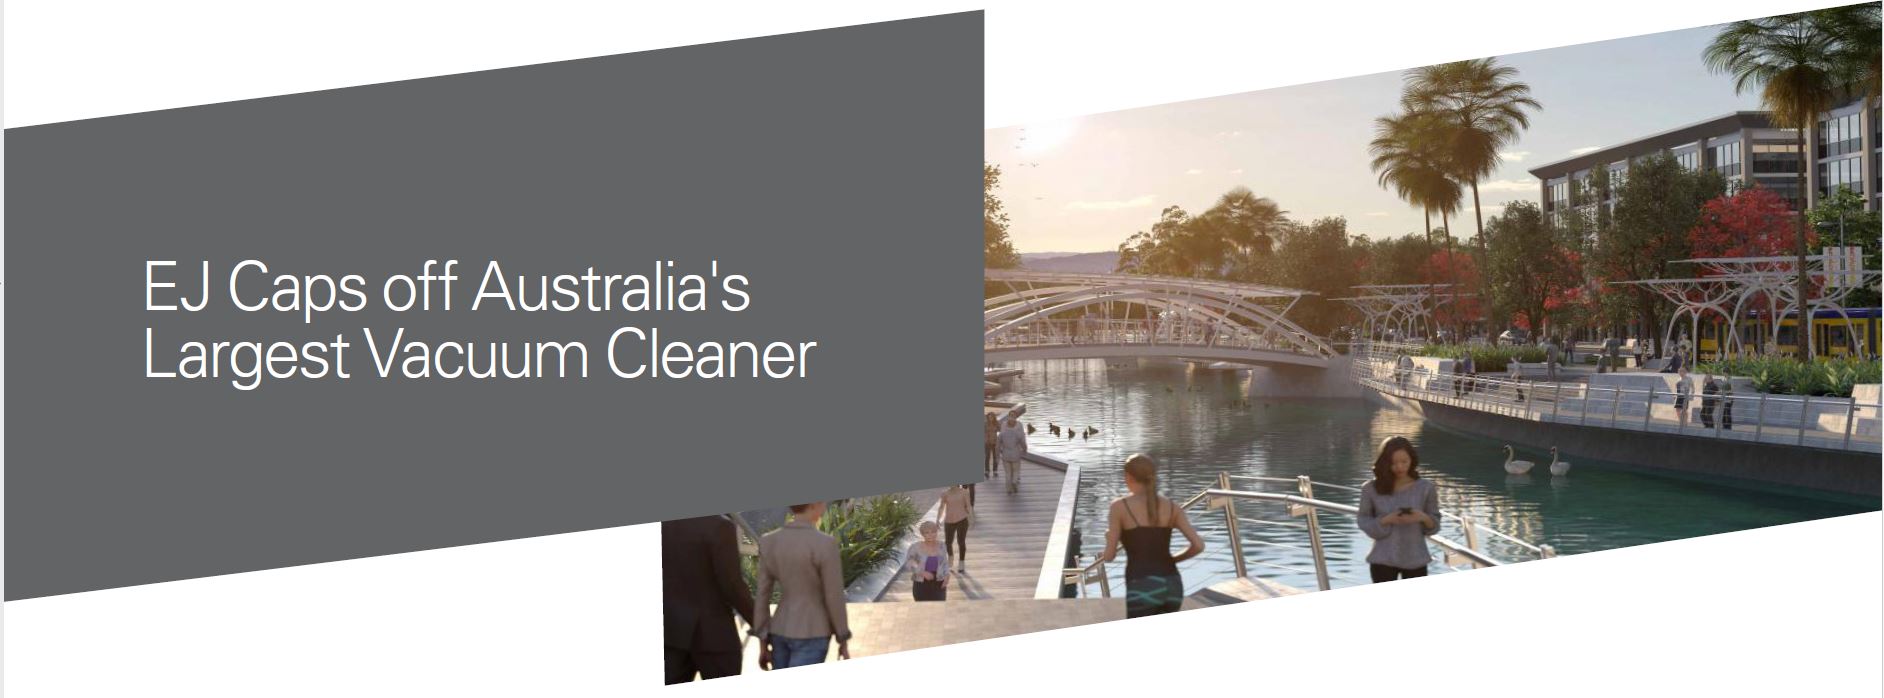 SunCentral - EJ Caps off Australia's Largest Vacuum Cleaner